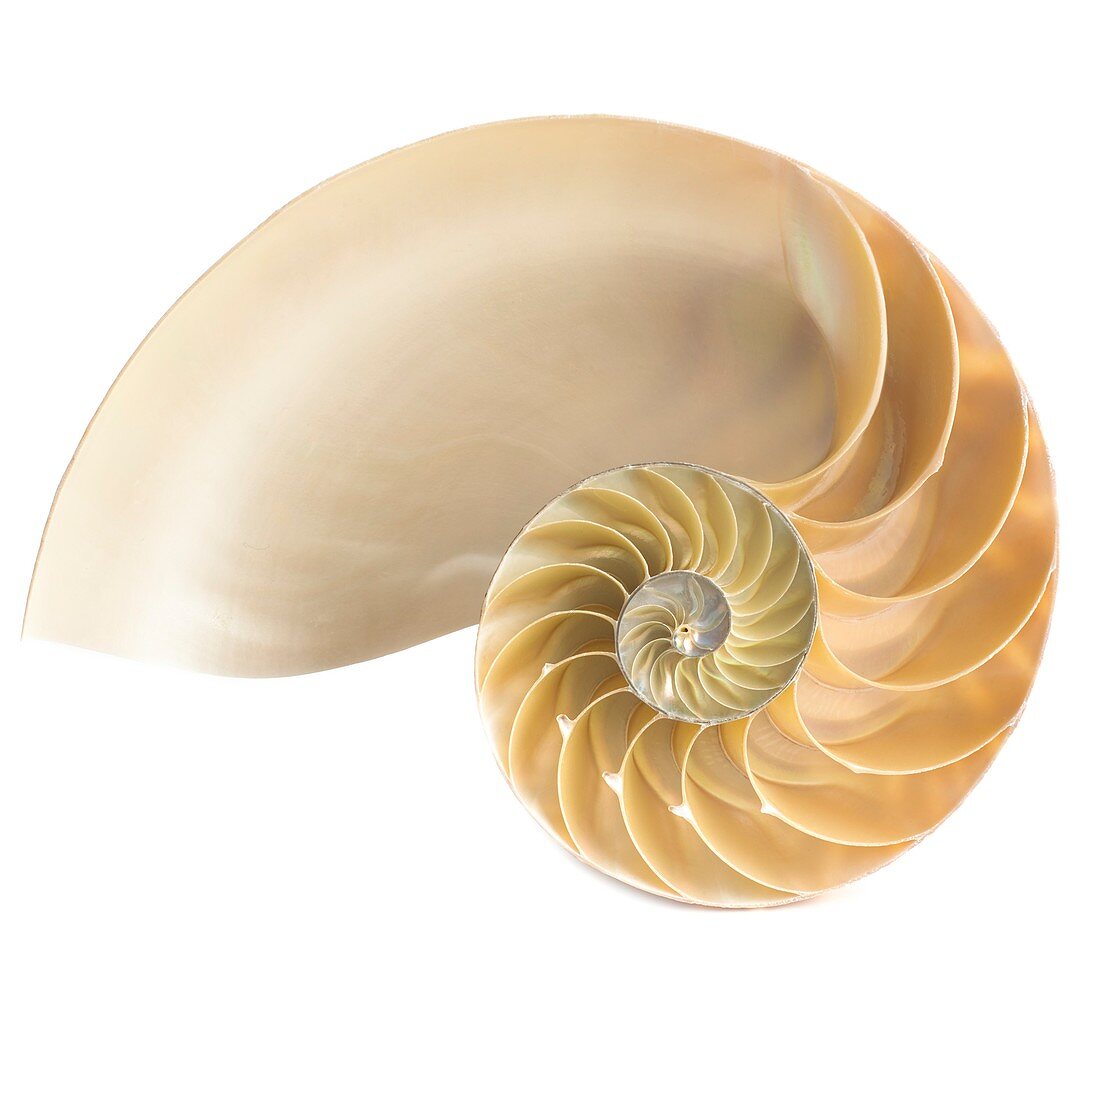 Halved chambered nautilus shell